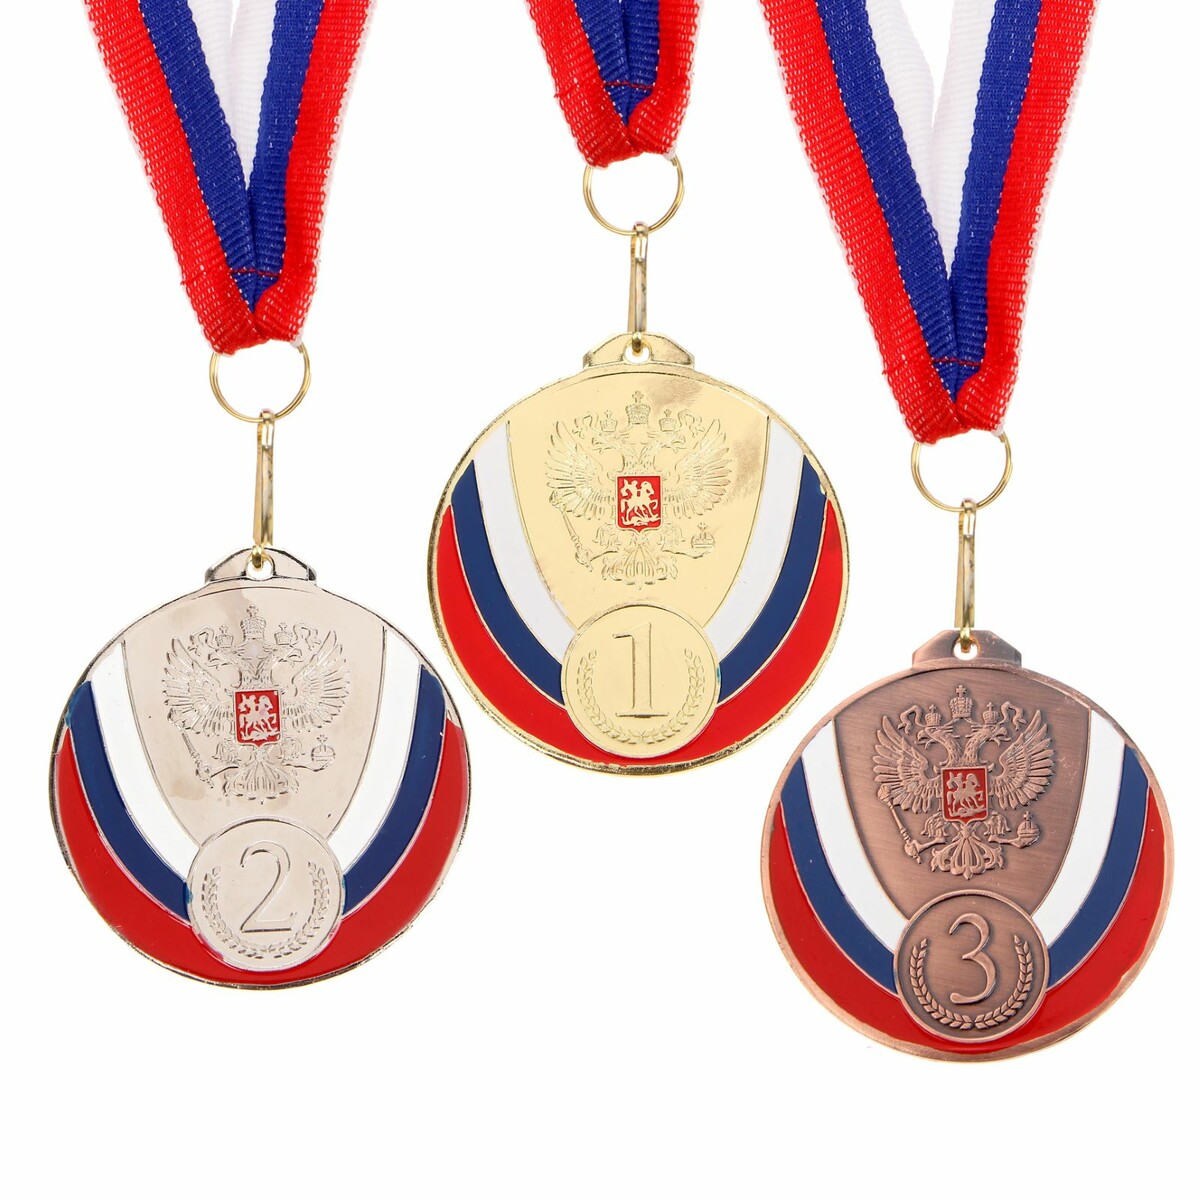 Медаль призовая 050 диам 7 см. 3 место, триколор. цвет бронз. с лентой медаль призовая 193 диам 3 5 см 3 место триколор бронз без ленты